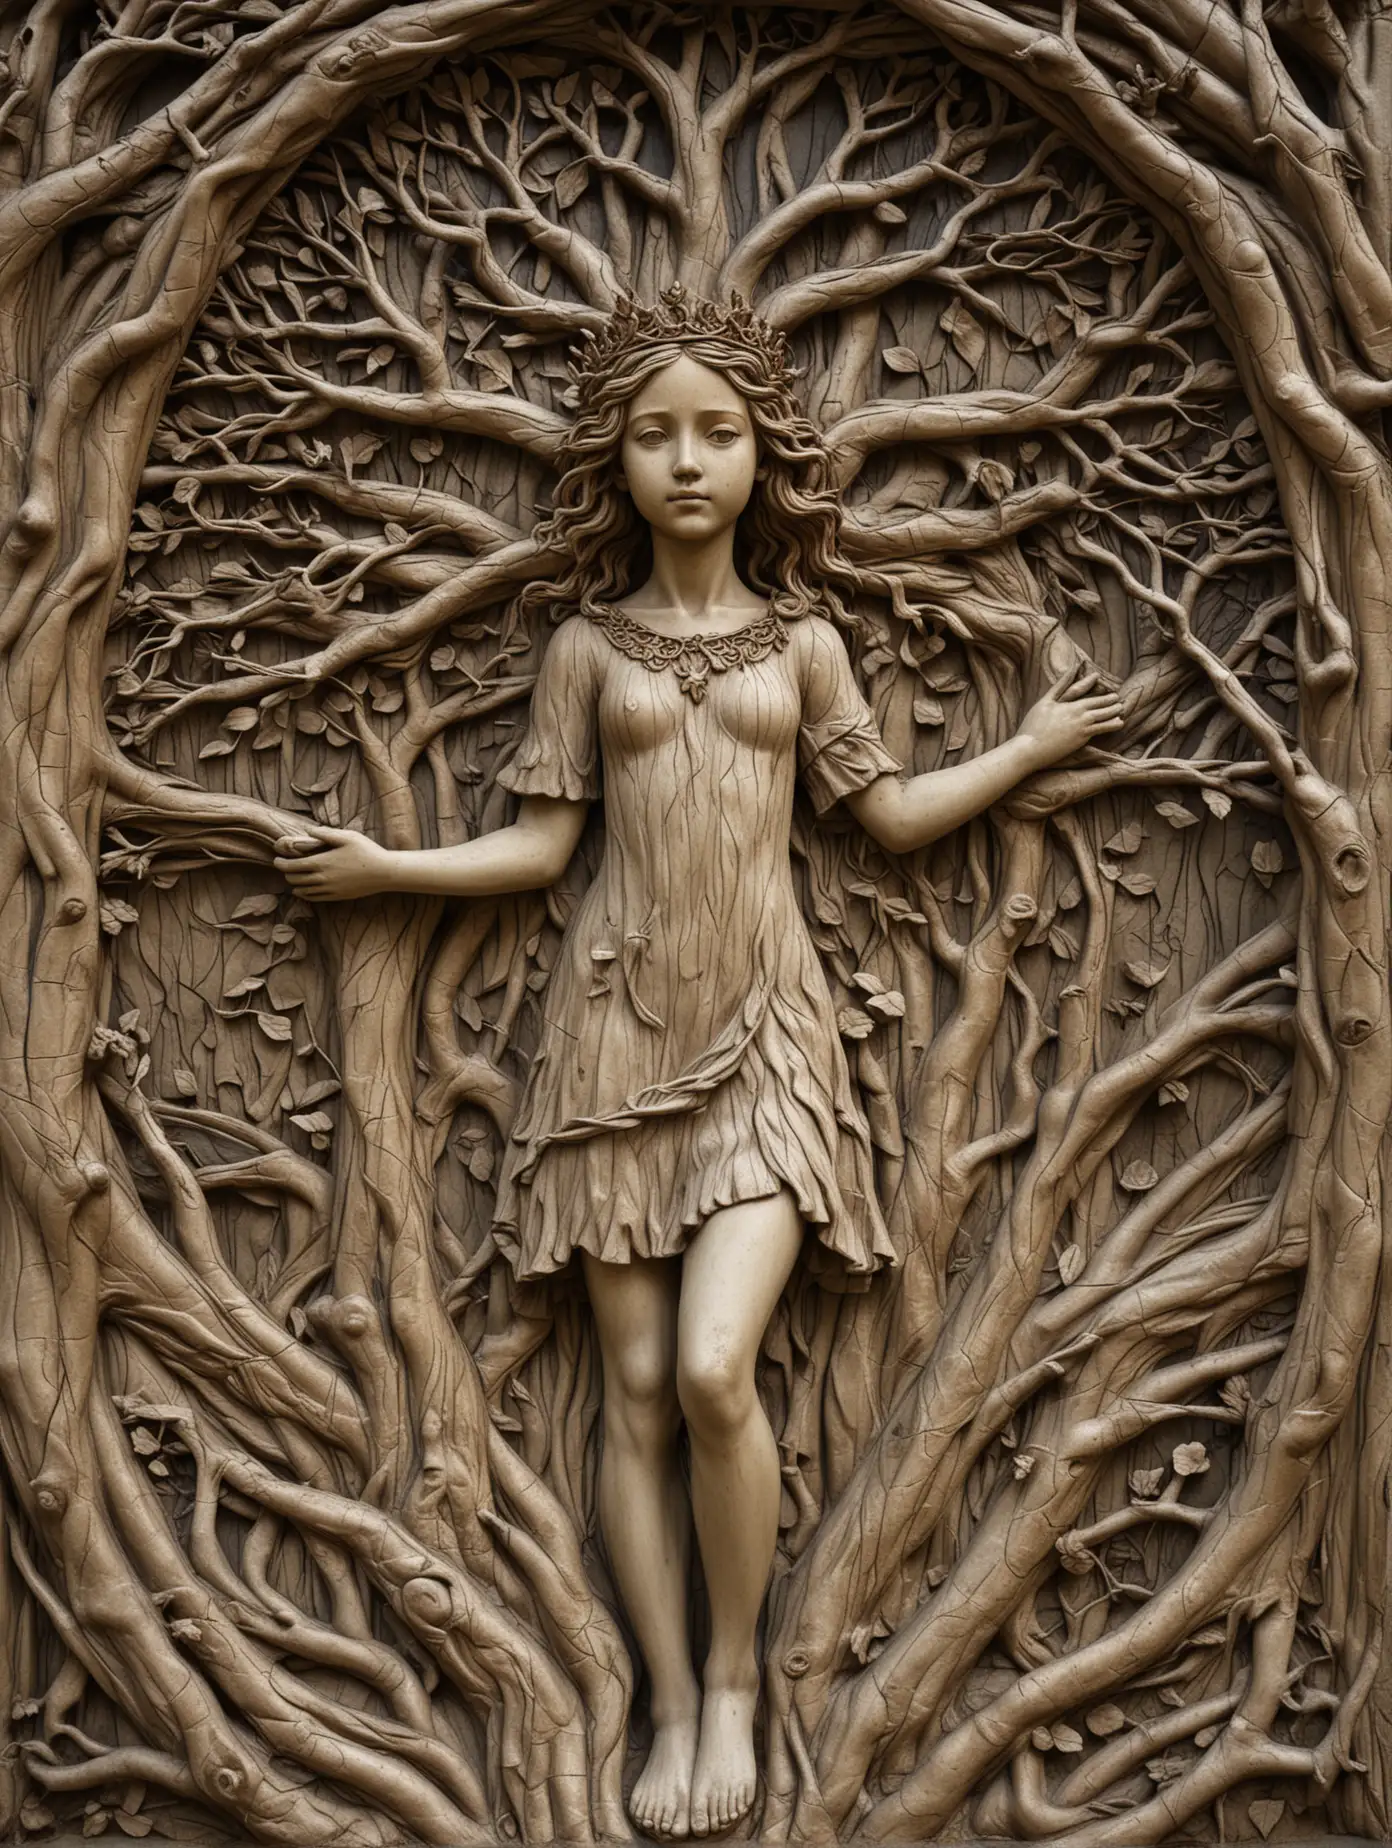 барельеф образ девушки в полный рост, в кроне большого дерева с переплетением веток и корней 